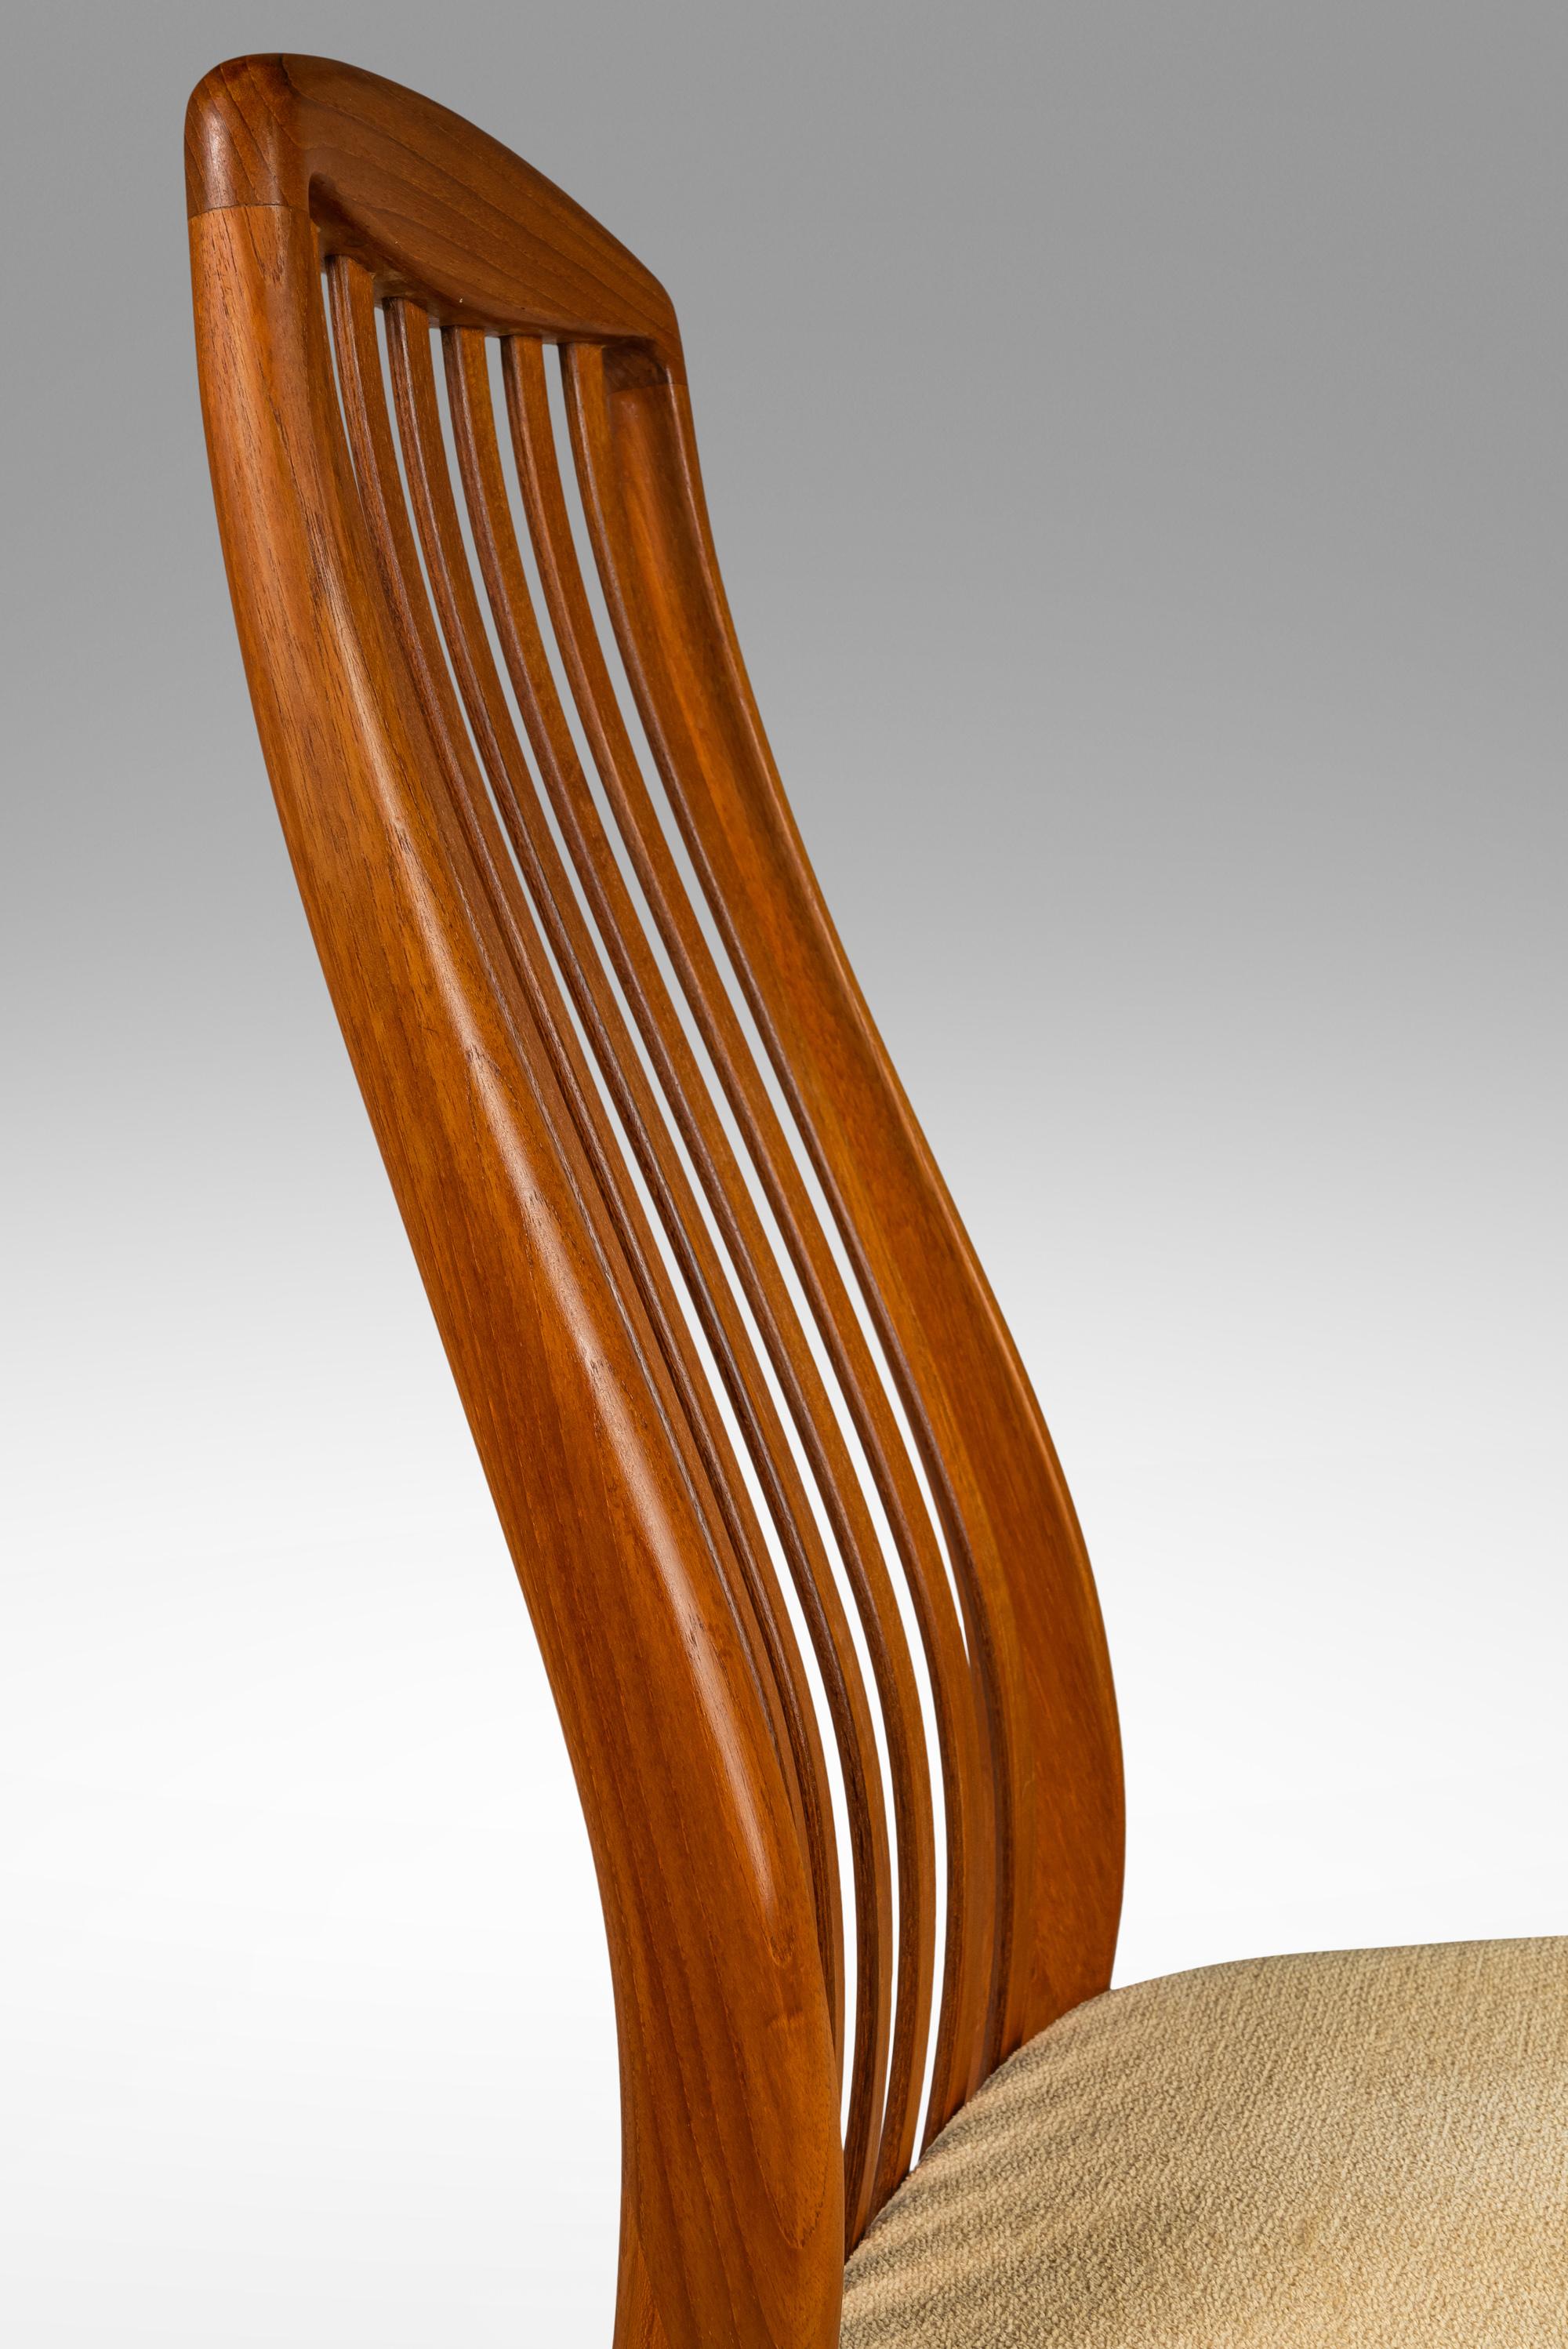 Fabric Set of 4 Dining Chairs by Preben Schou Andersen for Schou Andersen Møbelfabrik